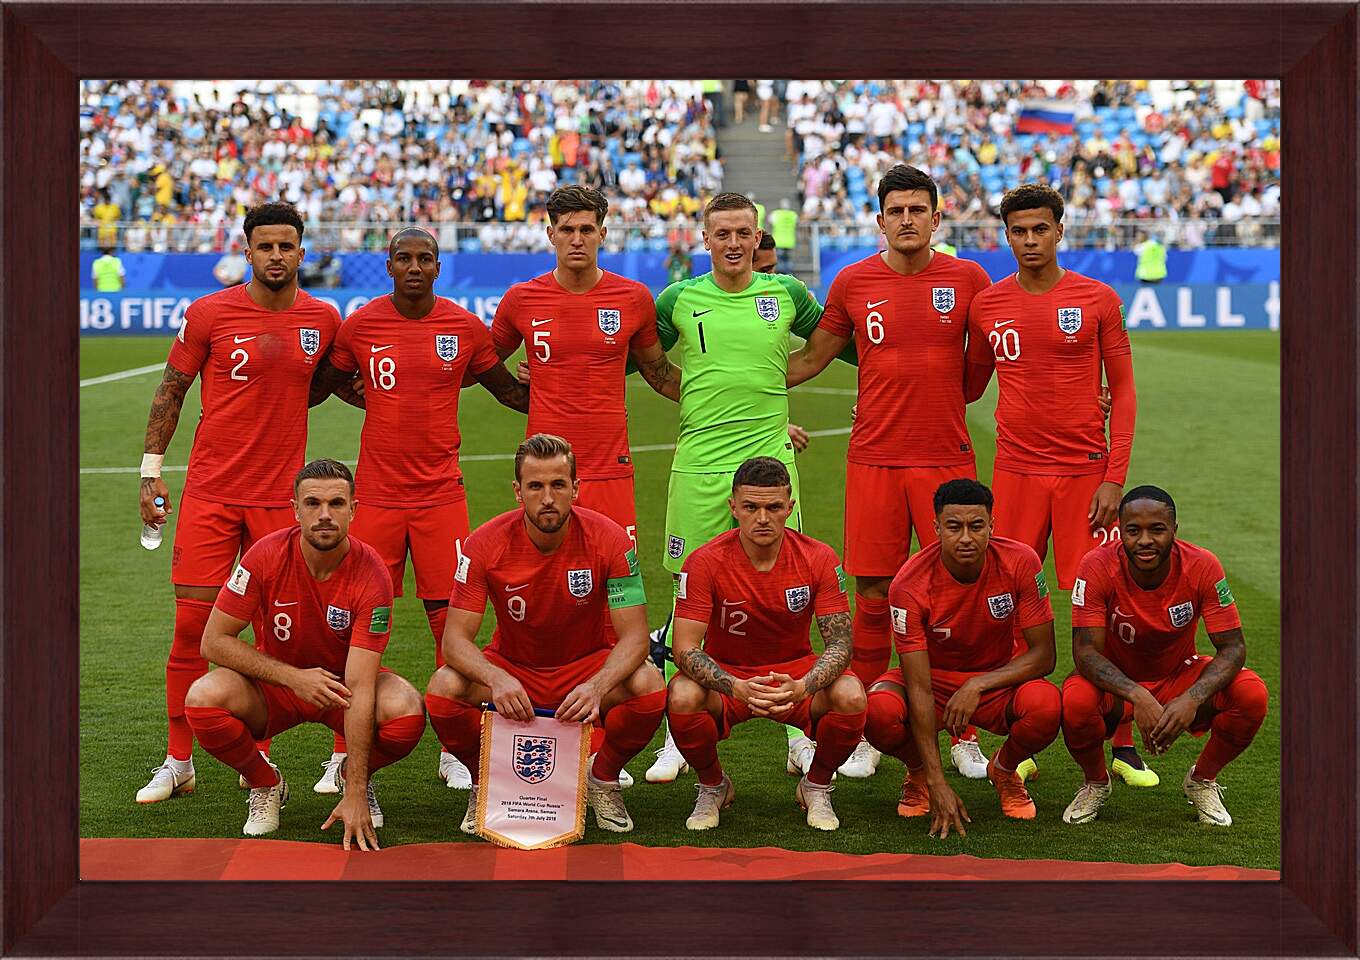 Картина в раме - Фото перед матчем сборной Англии по футболу